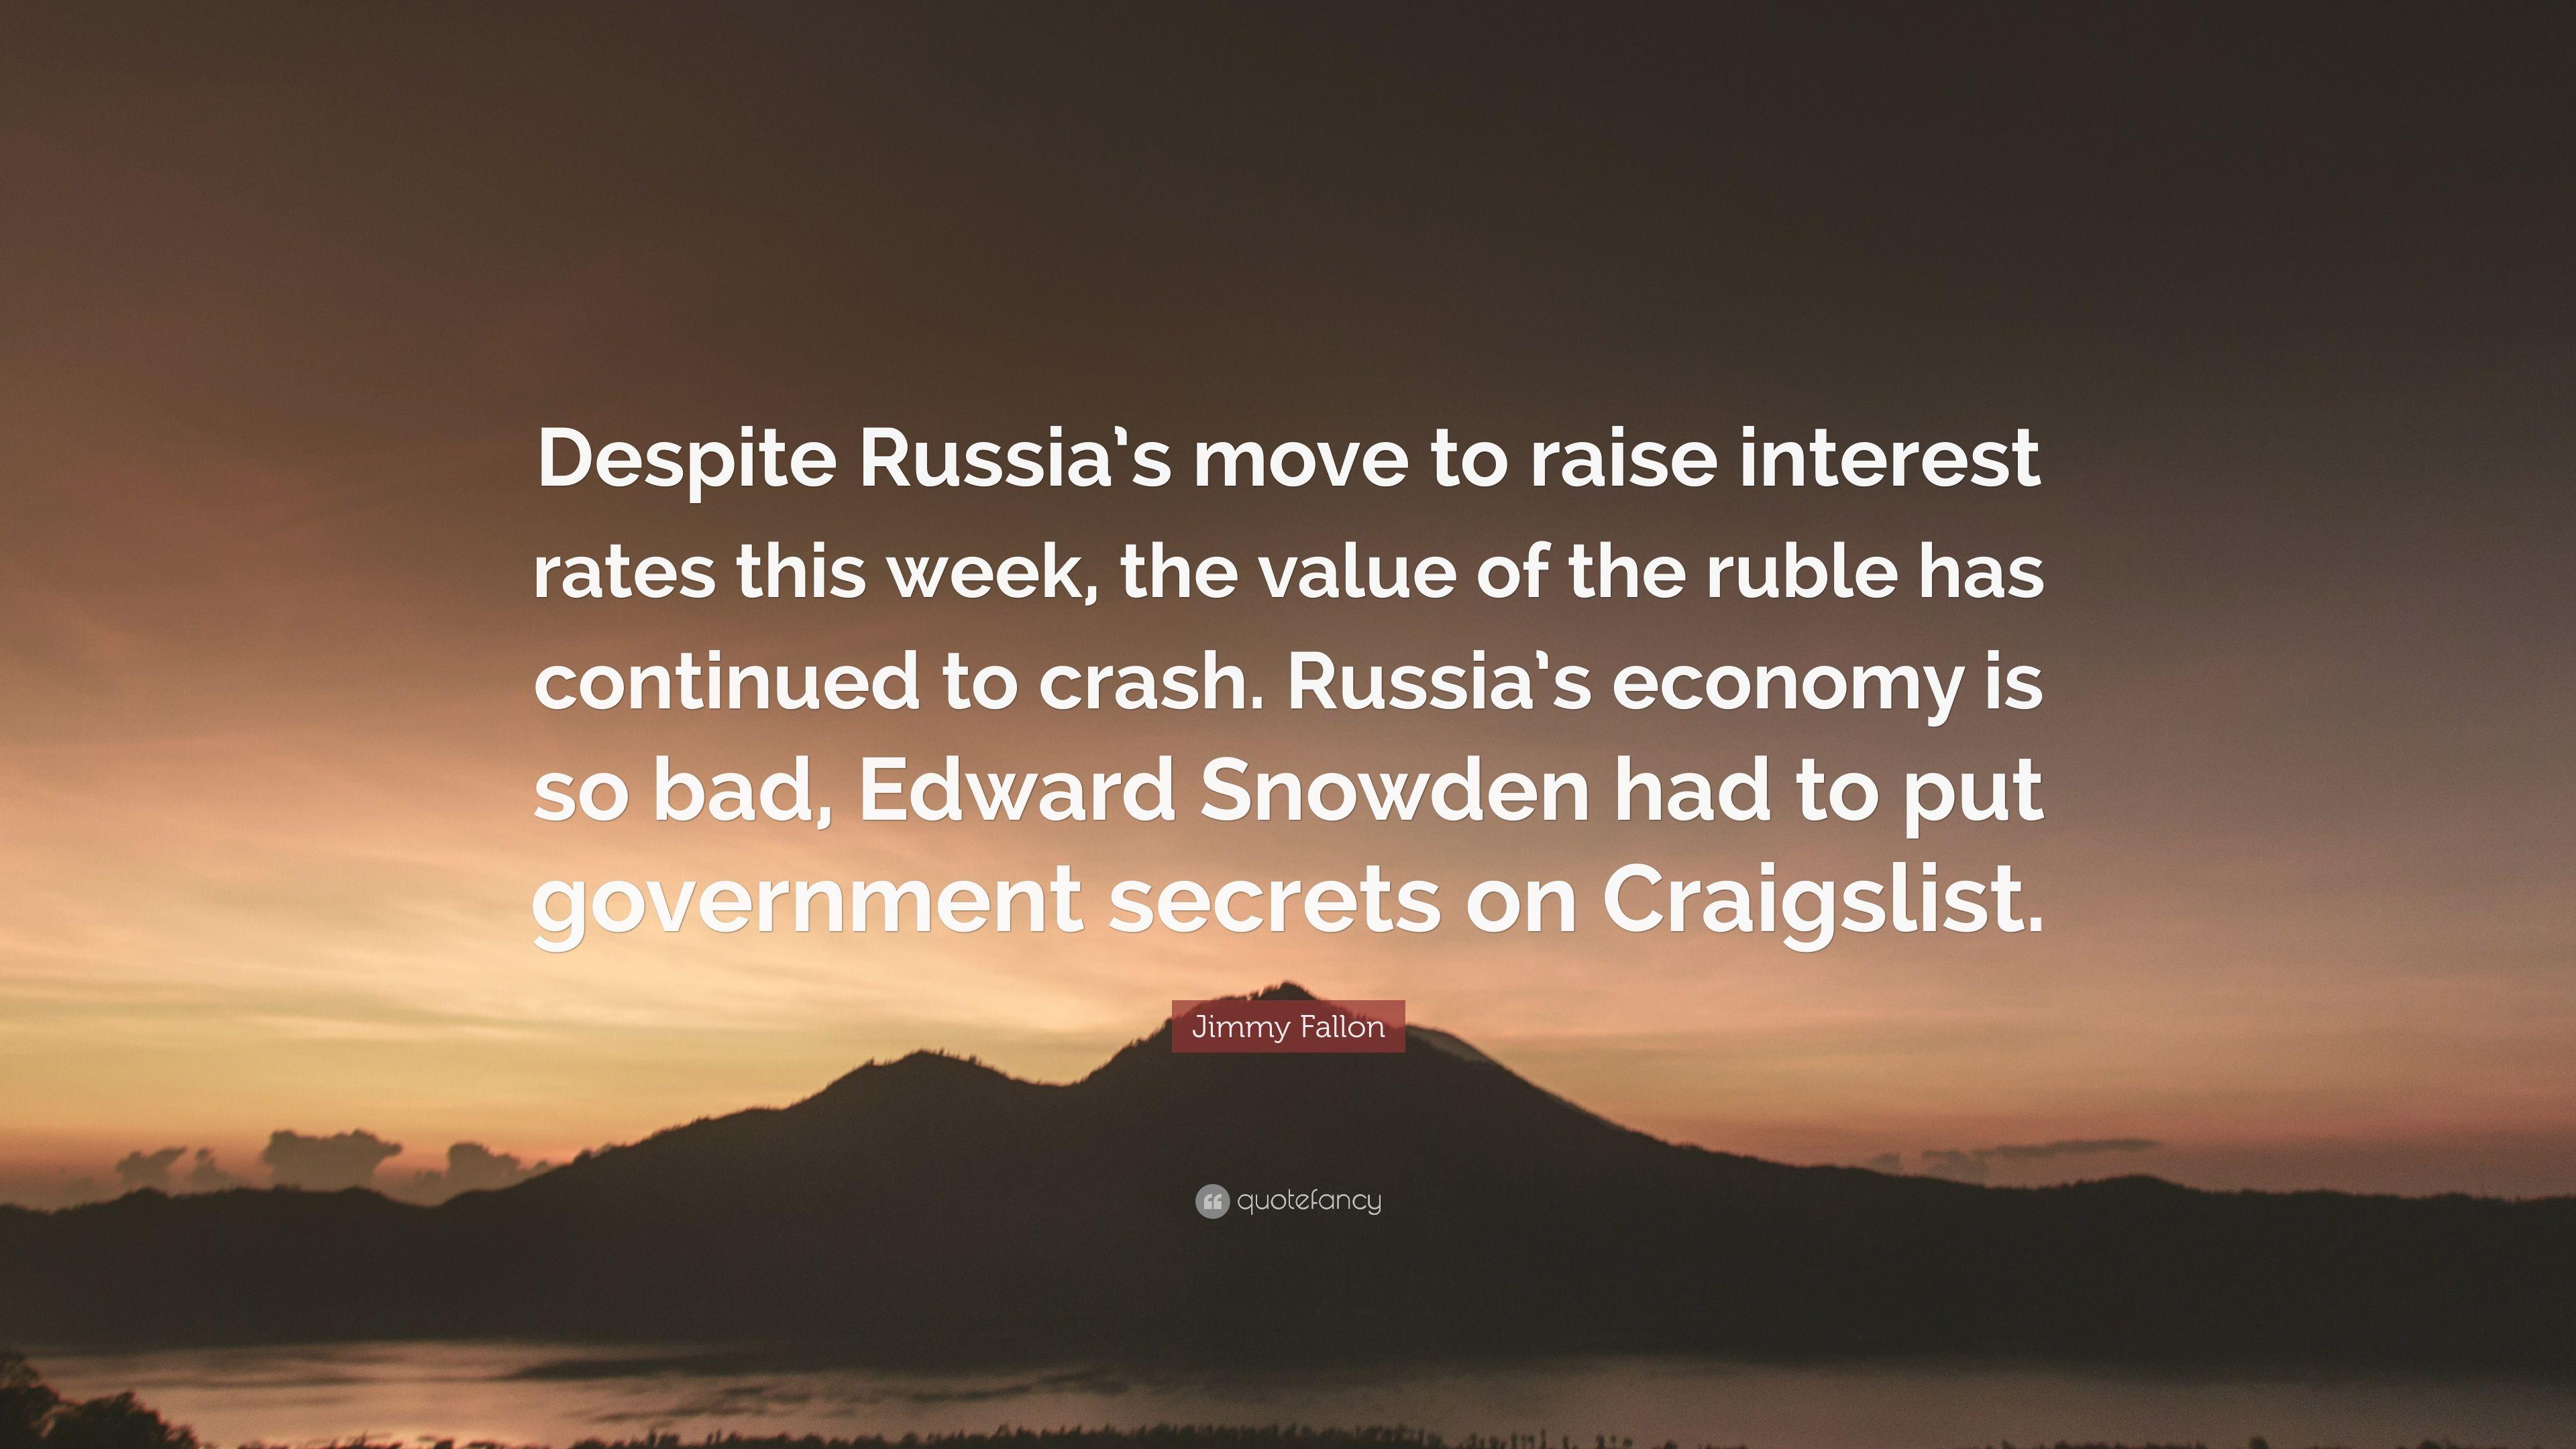 Jimmy Fallon Quote: “Despite Russia's move to raise interest rates